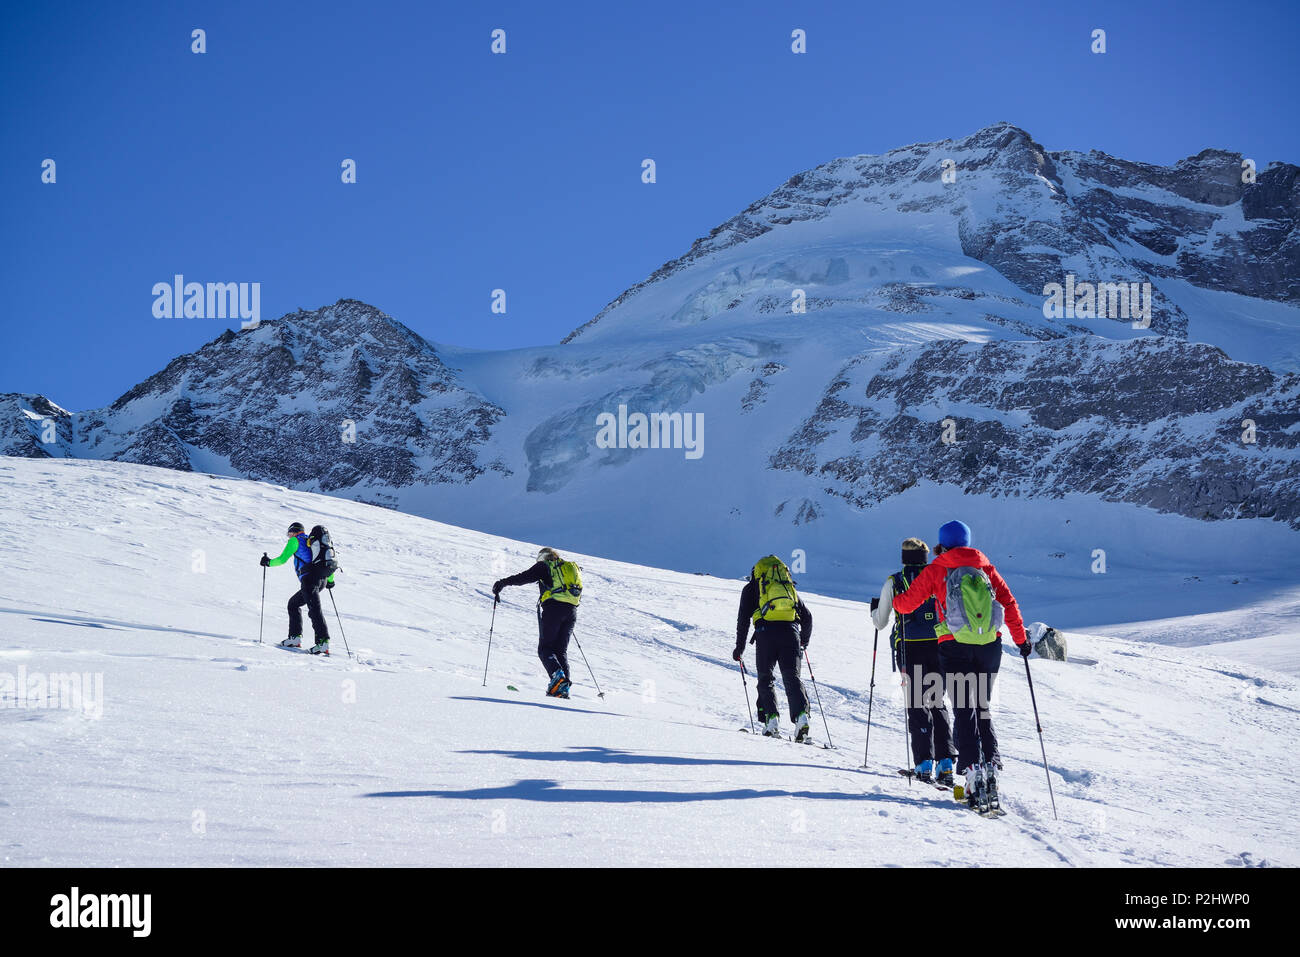 Several persons back-country skiing ascending towards Kleiner Kaserer, Olperer in the background, Kleiner Kaserer, valley of Sch Stock Photo